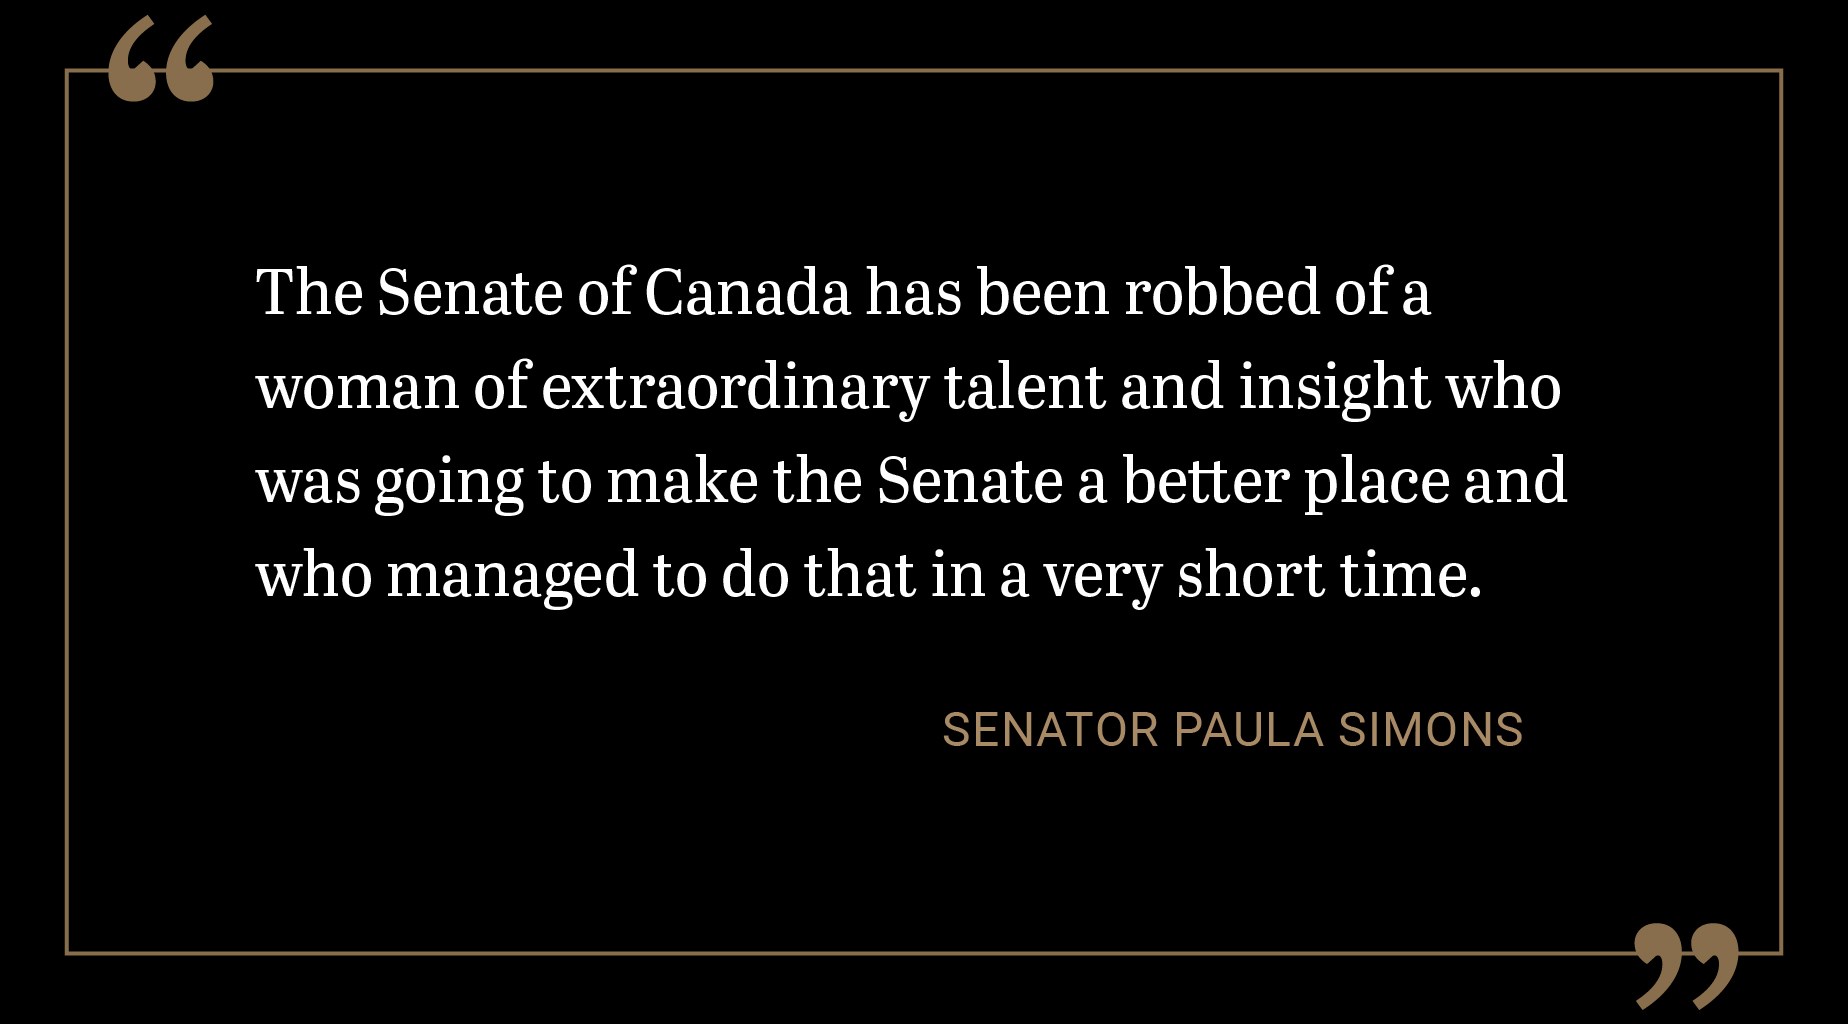 Le Sénat du Canada se retrouve privé d’une femme au talent et à l’esprit d’analyse extraordinaires qui aurait pu amener le Sénat à se surpasser, et qui l’a d’ailleurs fait en un très court laps de temps